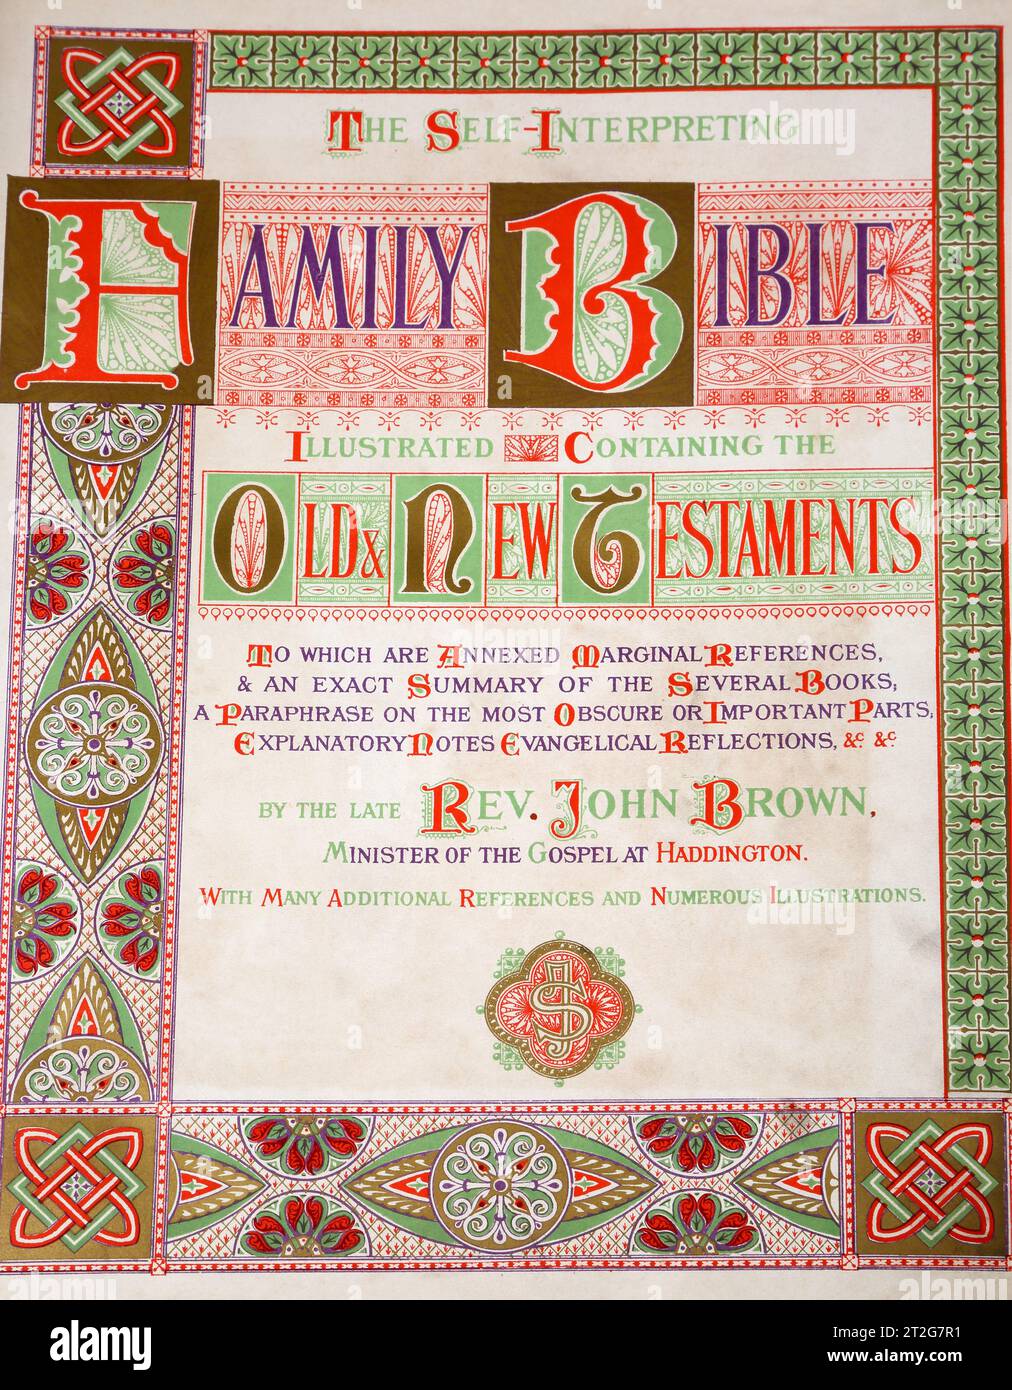 Titelseite aus der Heiligen Bibel des 19. Jahrhunderts - die selbstinterpretierende Familienbibel mit dem Alten und Neuen Testament von Reverand John Brown Stockfoto